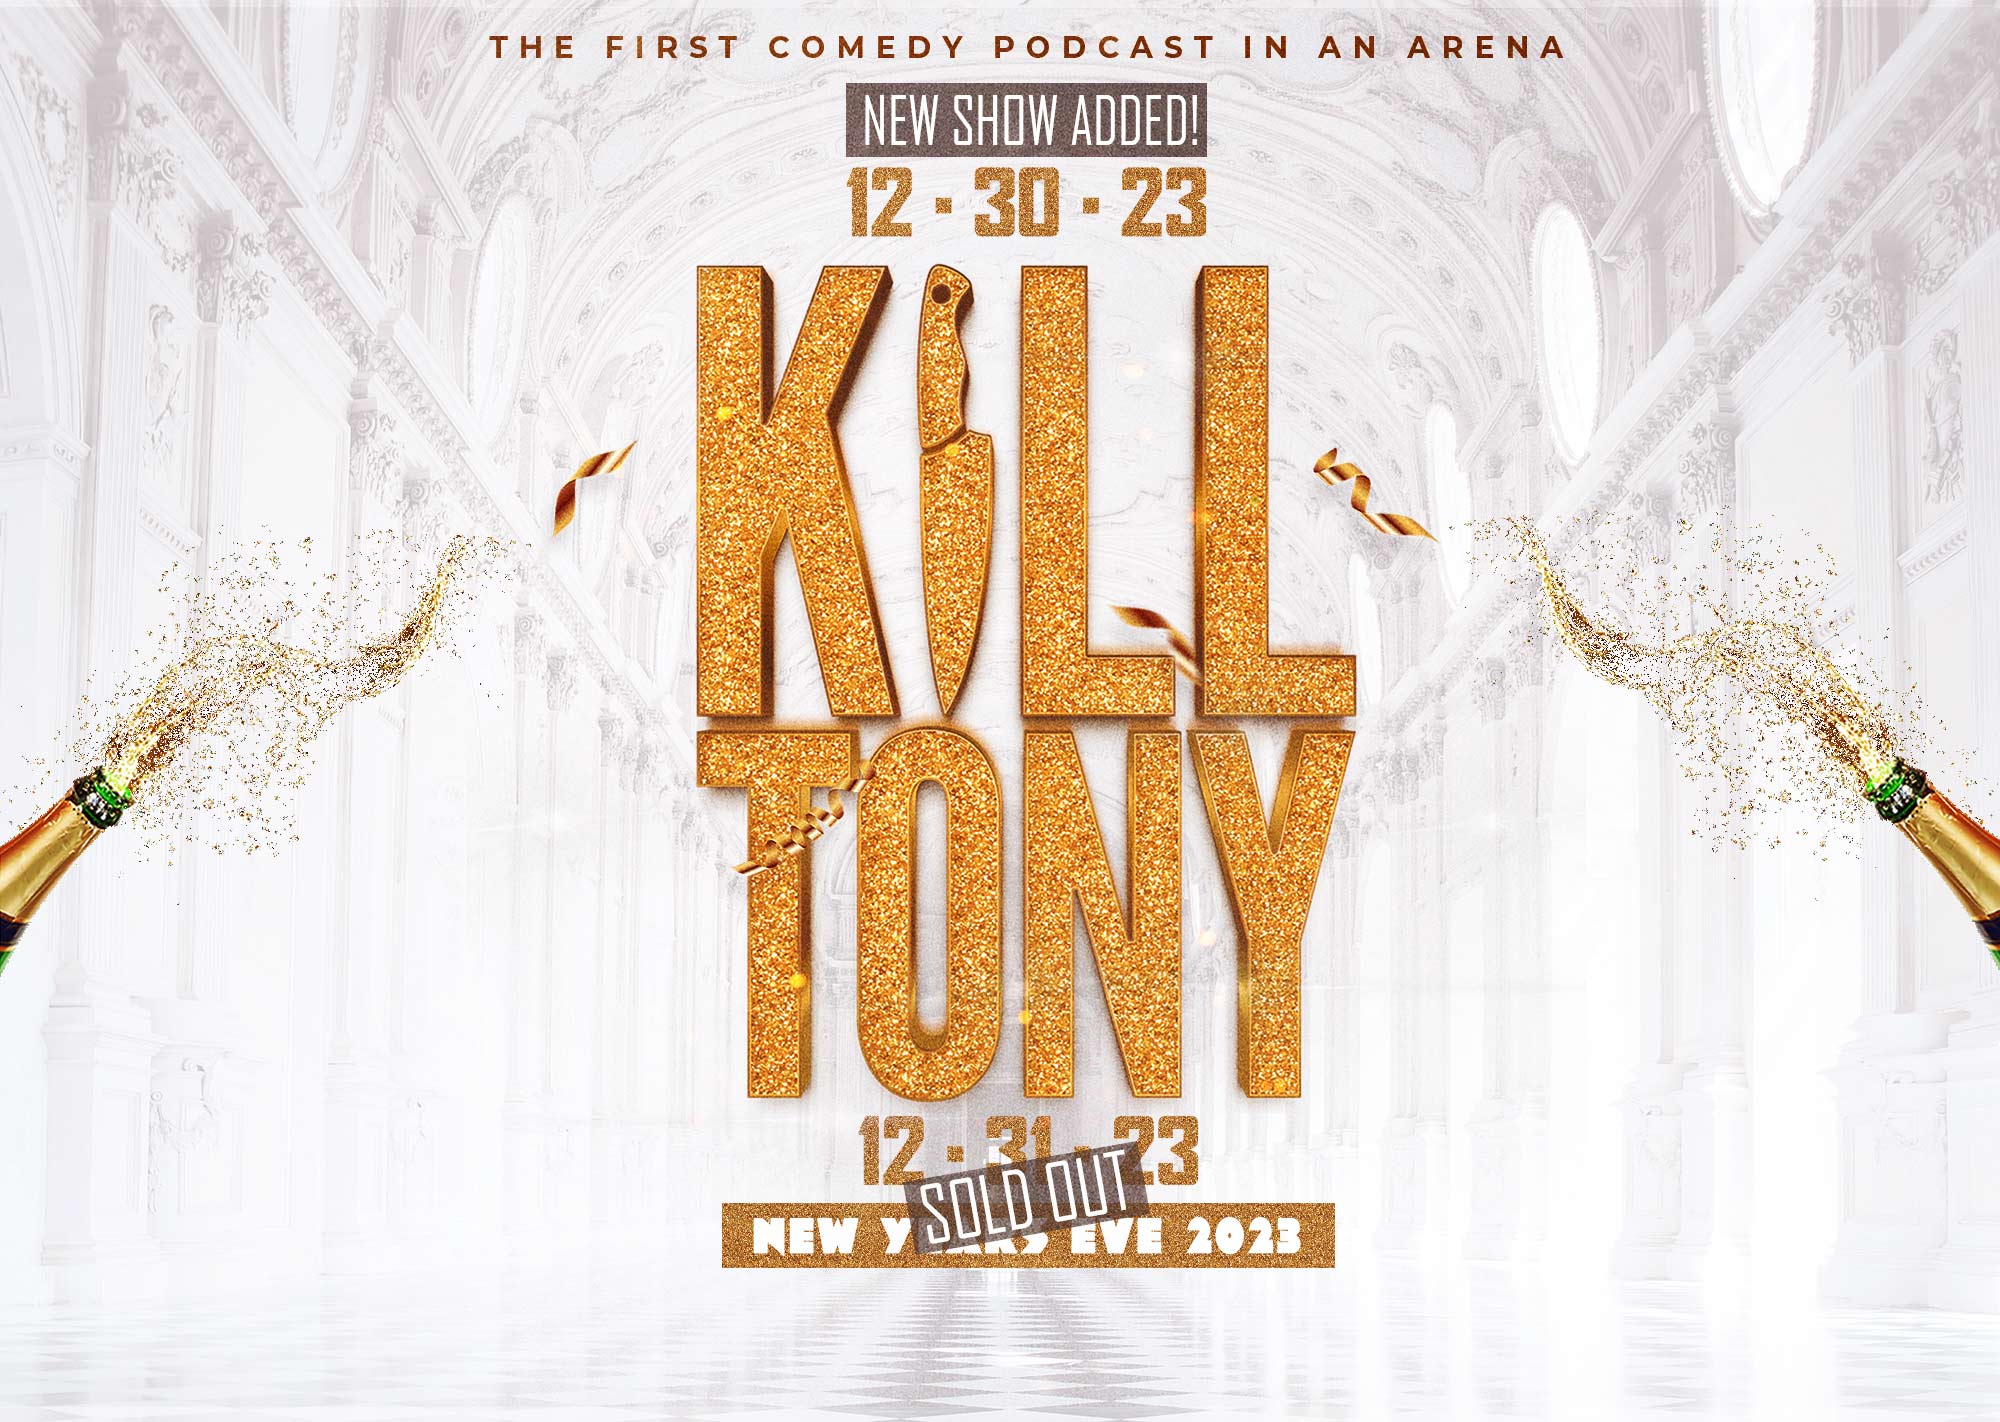 kill tony tour 2023